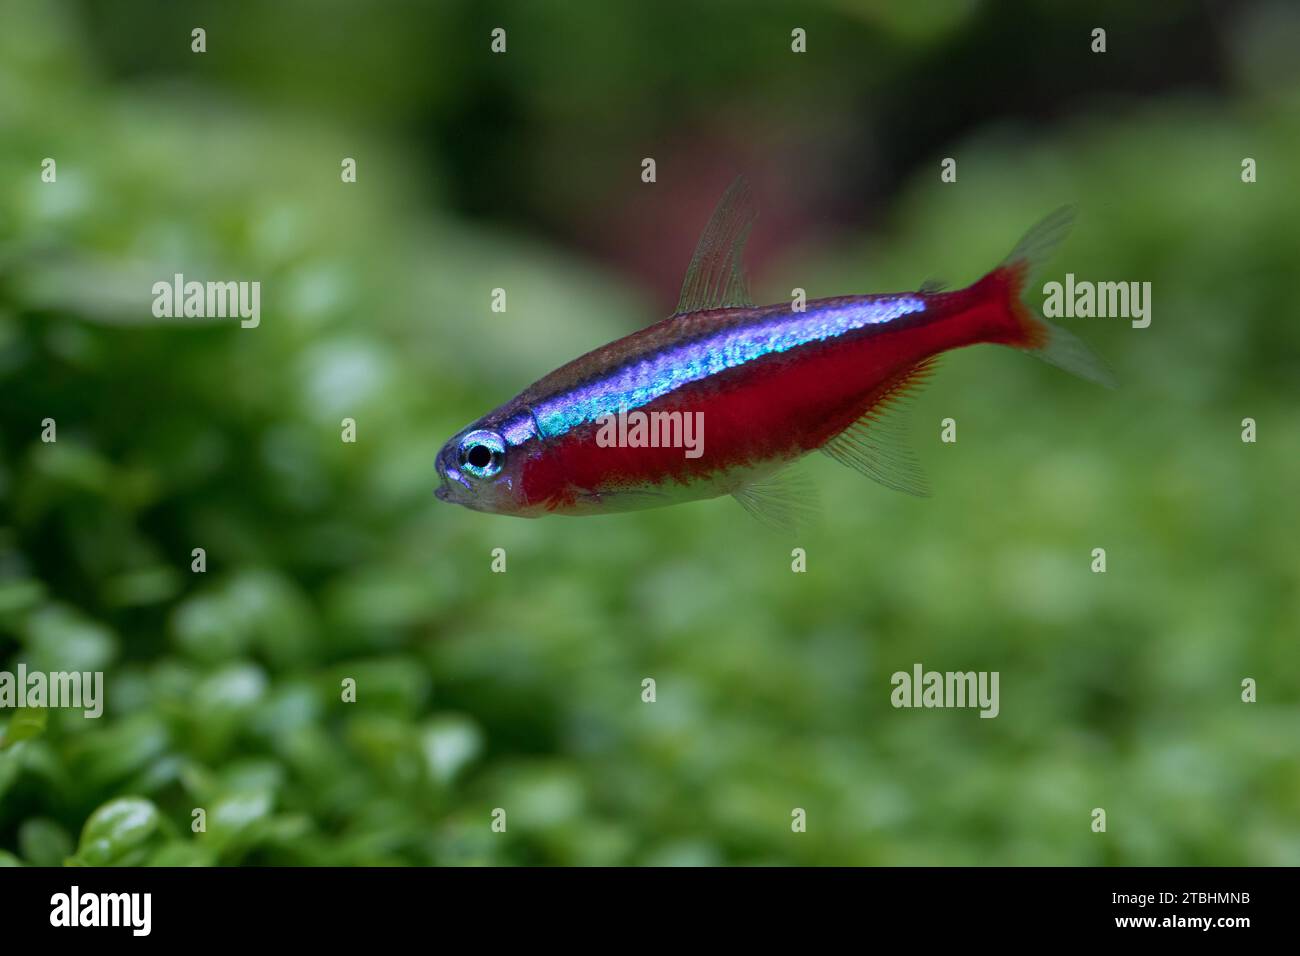 Primo piano dei pesci cardinali tetra in acquario con sfondo vegetale verde Foto Stock